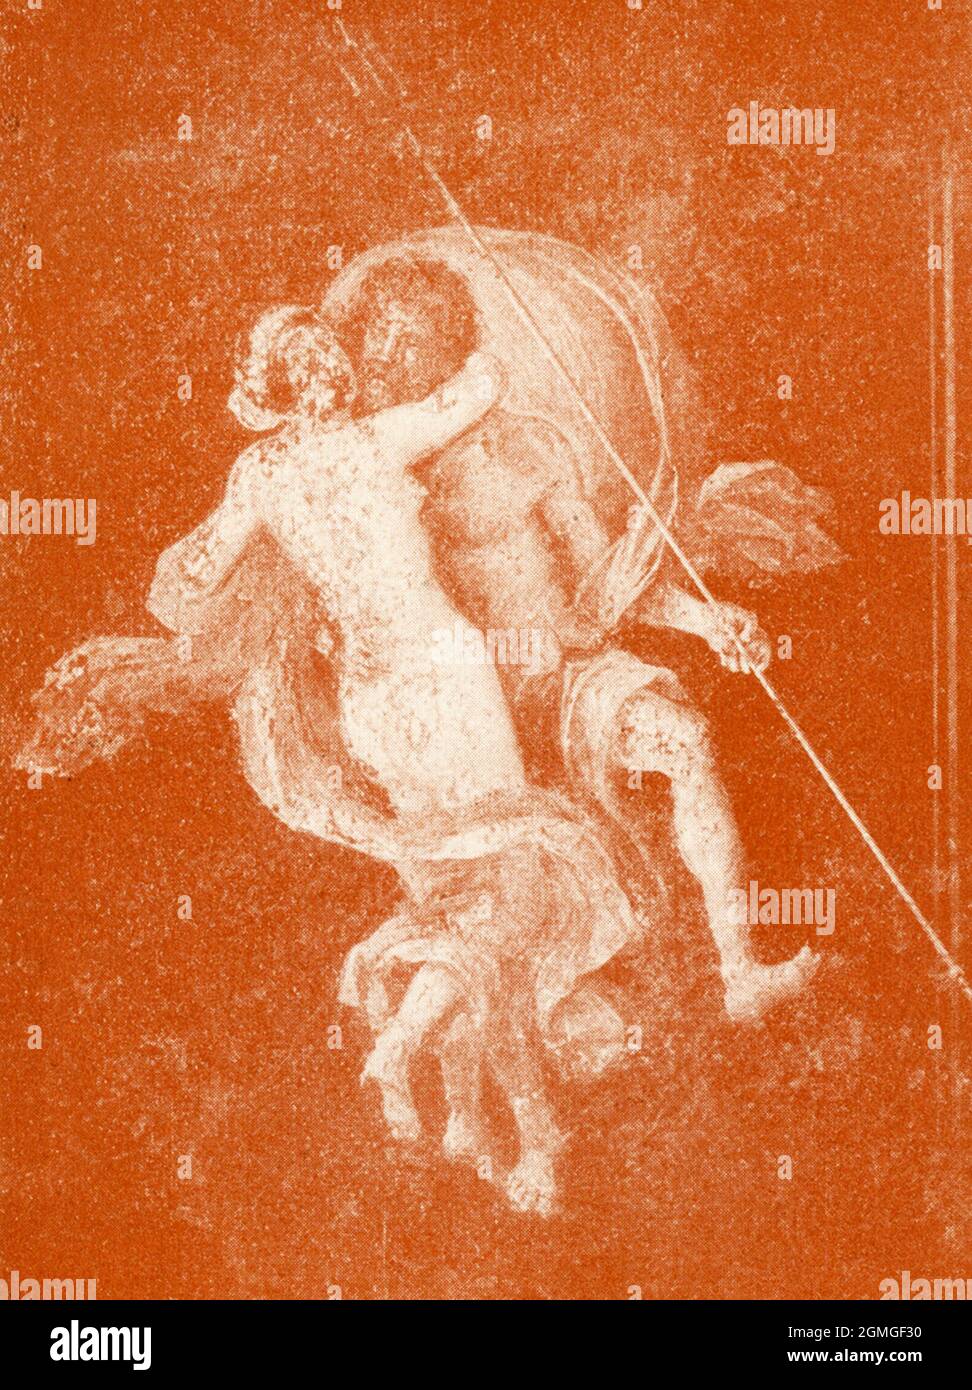 Diese 1910 in Pompeji freigelegte Illustration eines Wandbildes zeigt den meeresgott Poseidon und eine Nymphe. Die römische Stadt Pompeji, südlich von Rom, wurde beim Ausbruch des Vesuvs im Jahr 79 n. Chr. begraben. Stockfoto